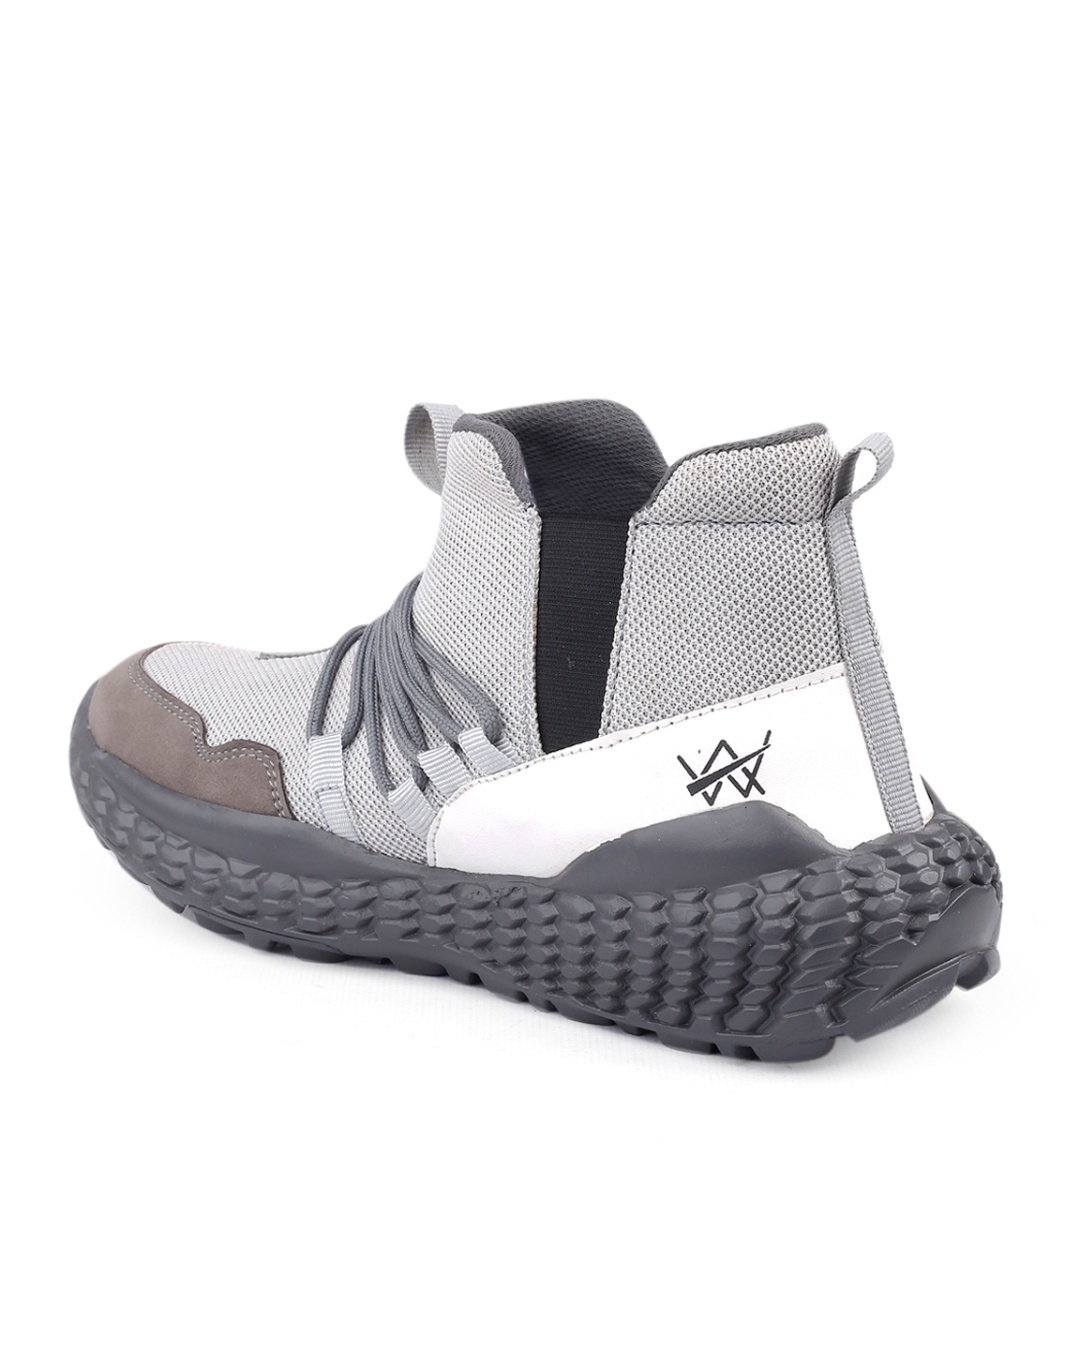 Shop Men's Grey Sneakers-Design